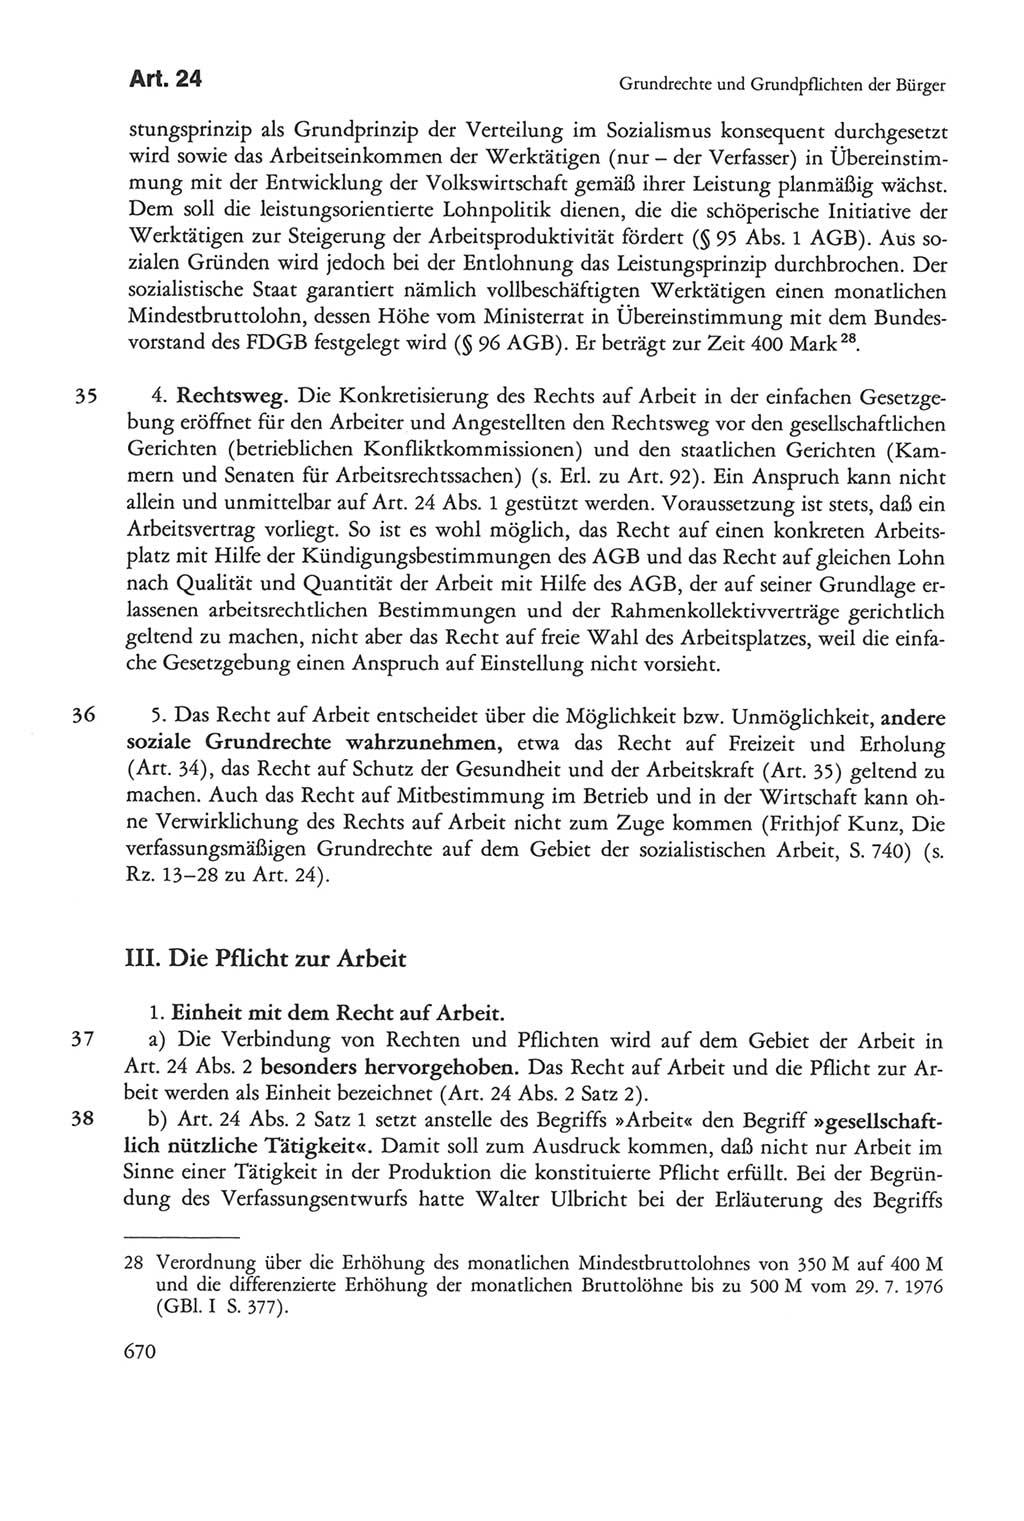 Die sozialistische Verfassung der Deutschen Demokratischen Republik (DDR), Kommentar 1982, Seite 670 (Soz. Verf. DDR Komm. 1982, S. 670)